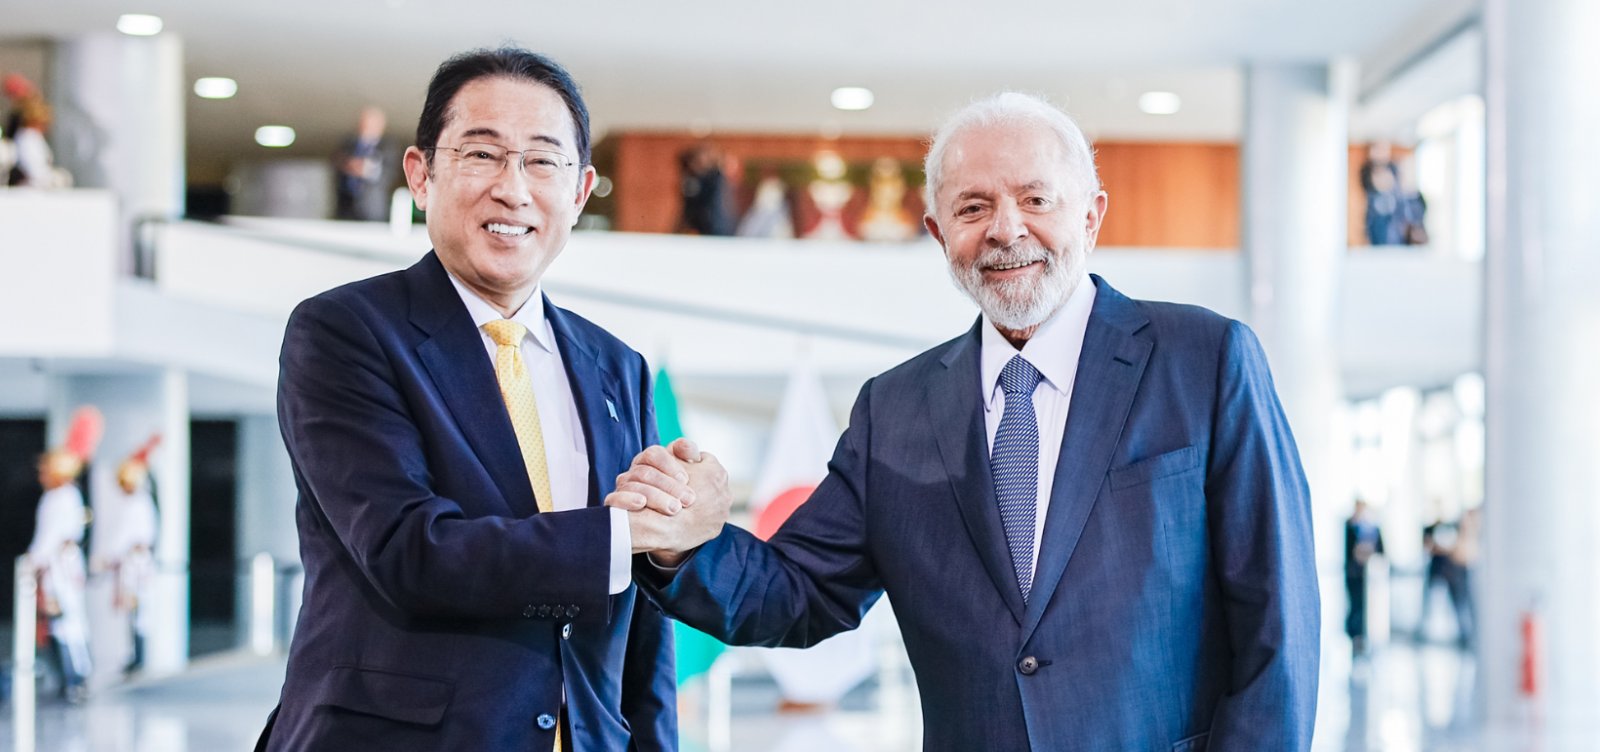 Primeiro-ministro do Japão afirma que trabalhará com Brasil para reformar o Conselho de Segurança da ONU